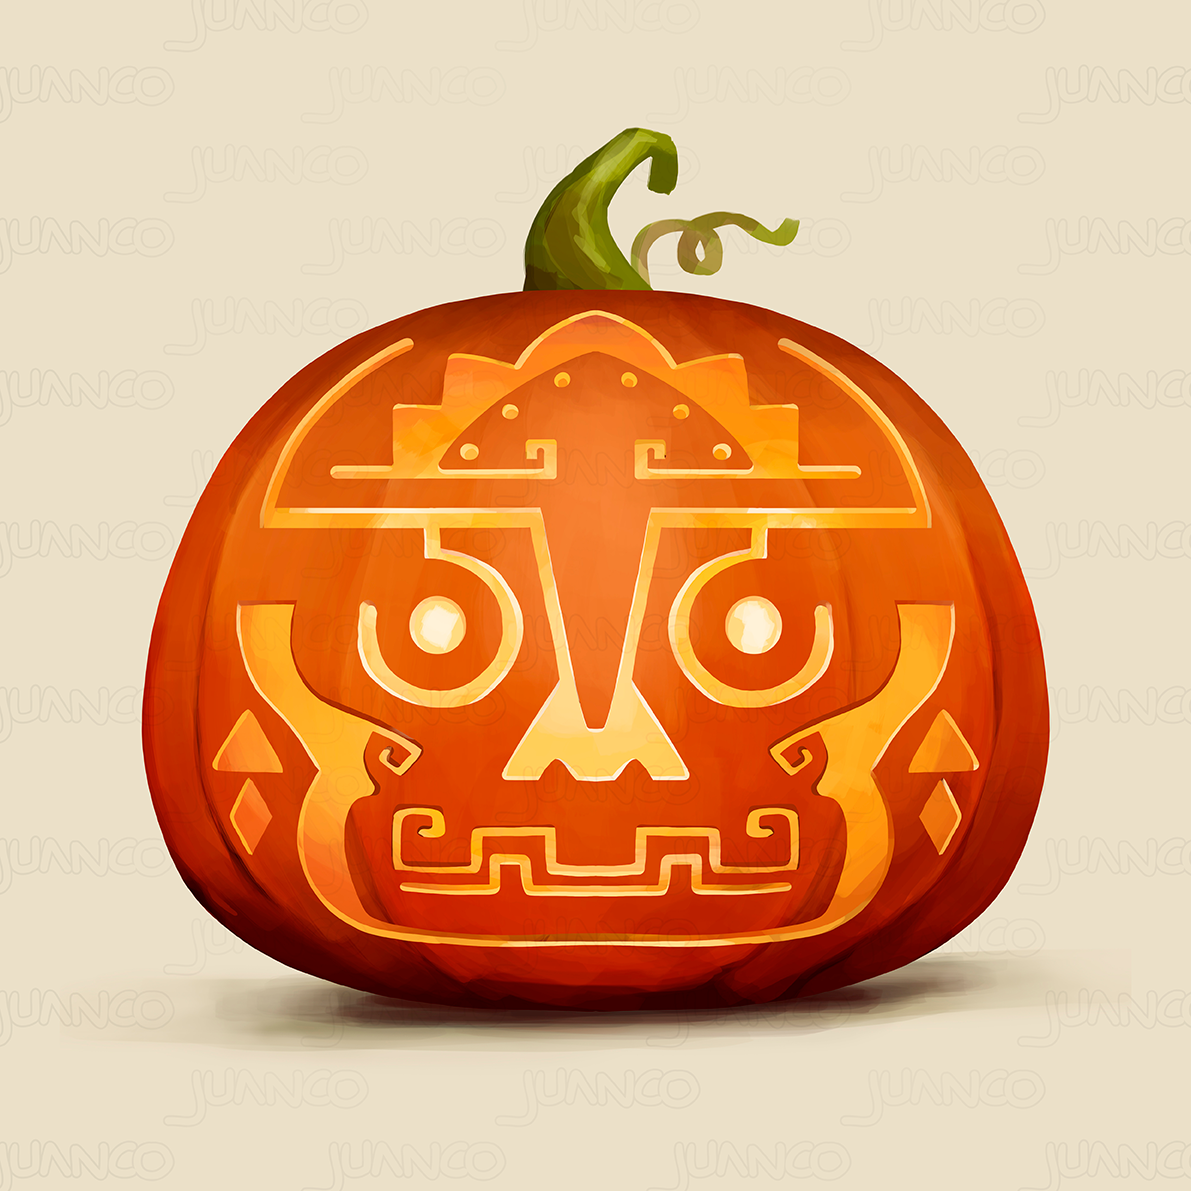 artwork cartoon dark Digital Art  digital illustration Drawing  Halloween horror pumpkin Scary